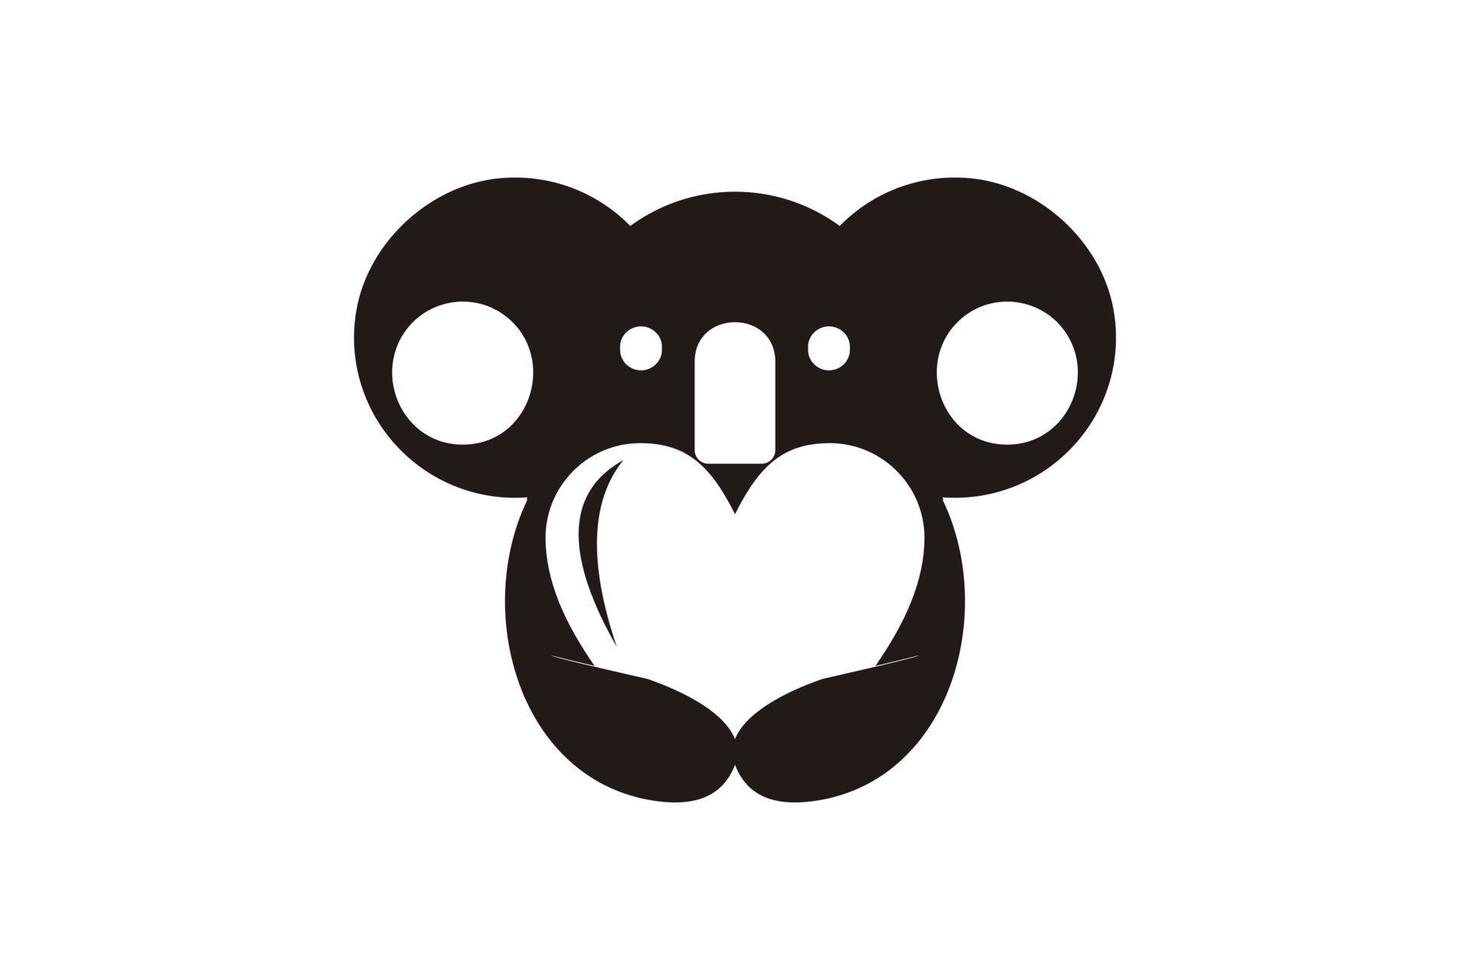 Koala logo design inspiration with heart balloons vector